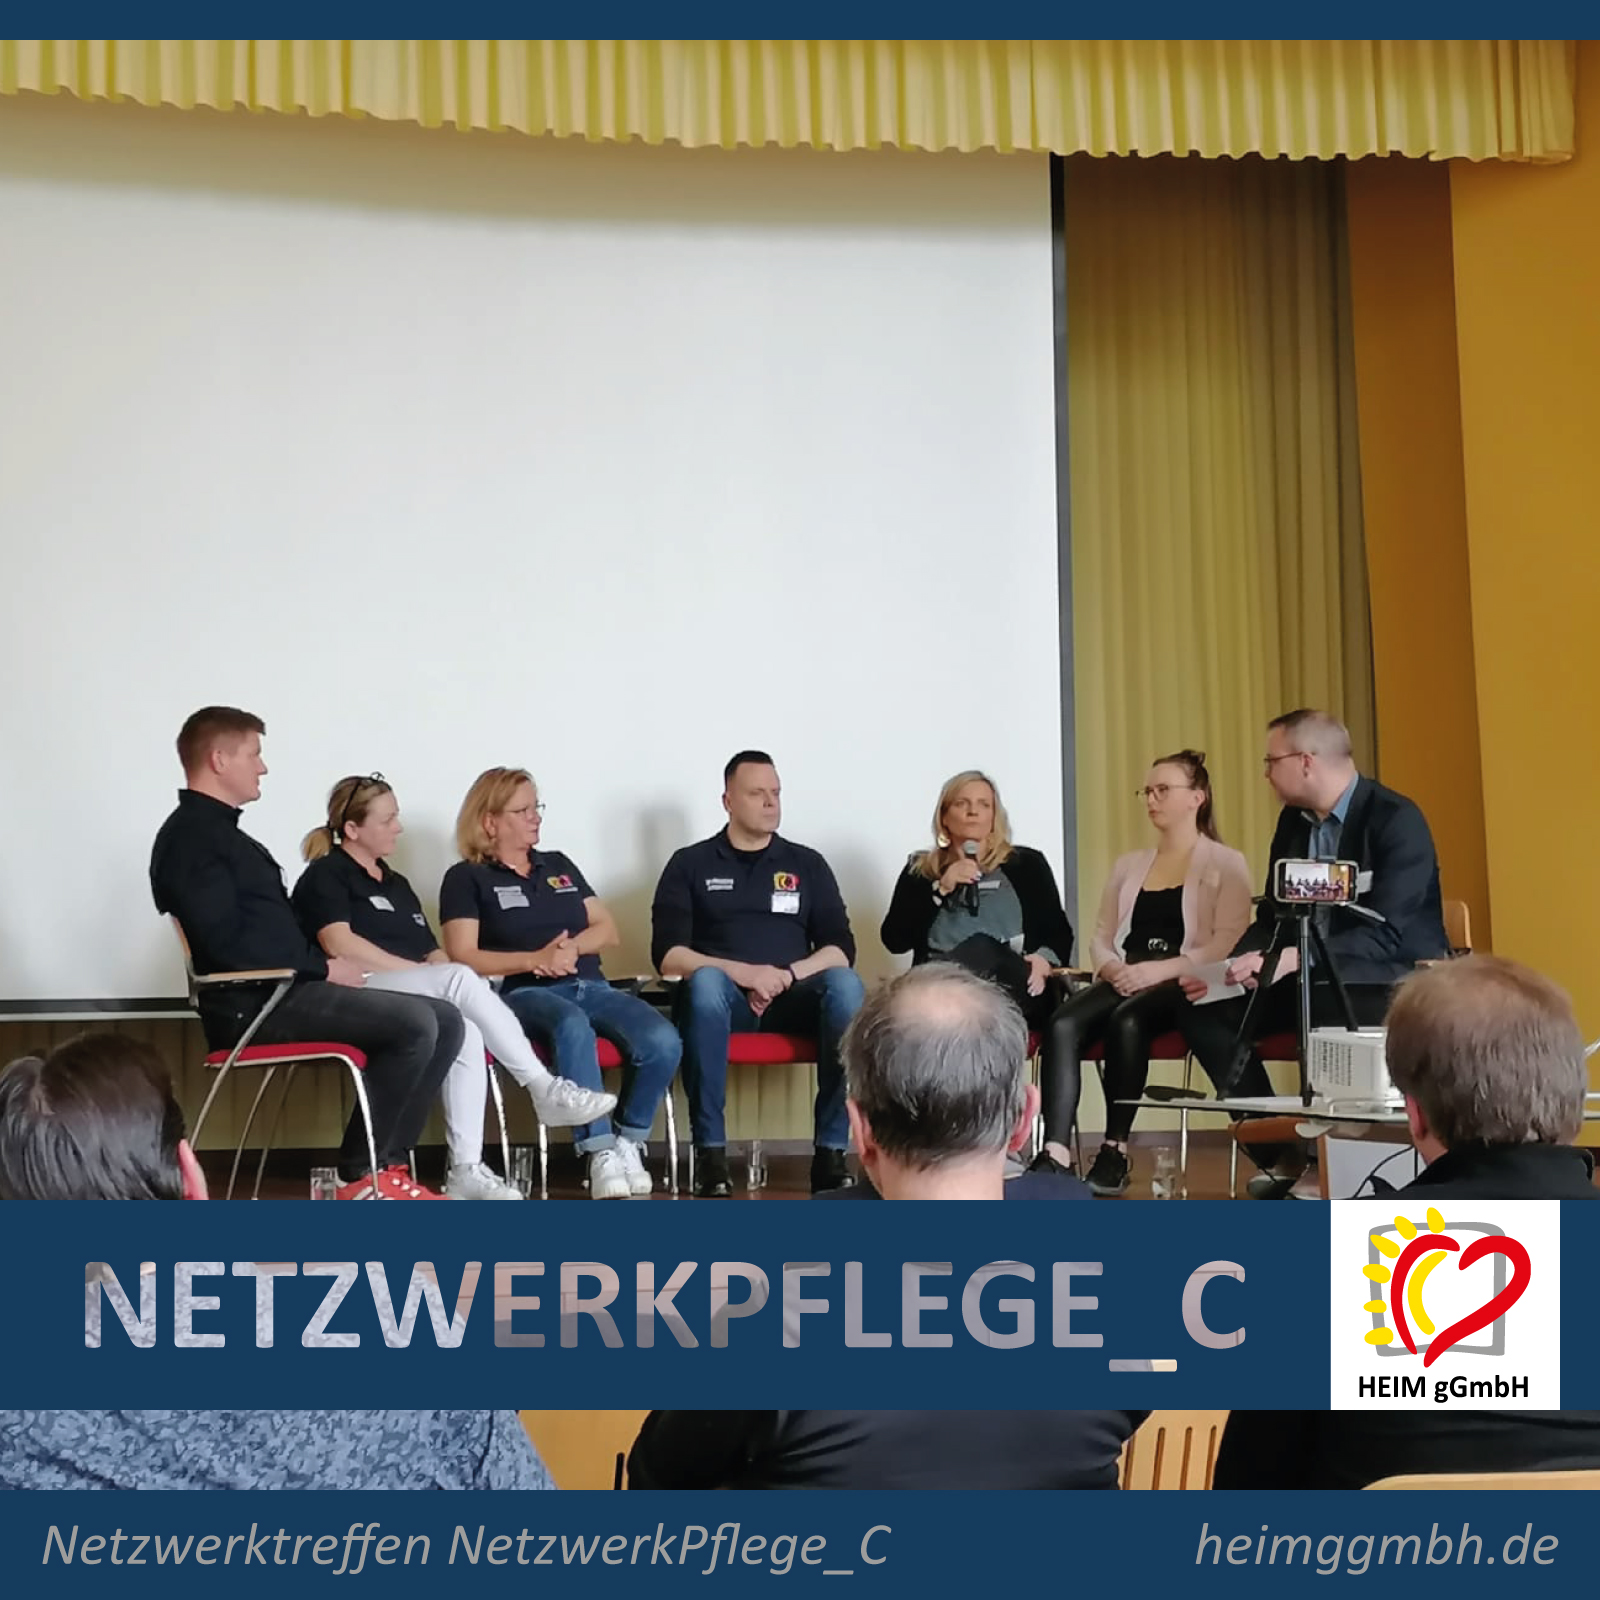 Die HEIM gemeinnützige GmbH als Teilnehmer der Podiumsdiskussion beim 17. Netzwerktreffen des NetzwerkPflege_C Chemnitz